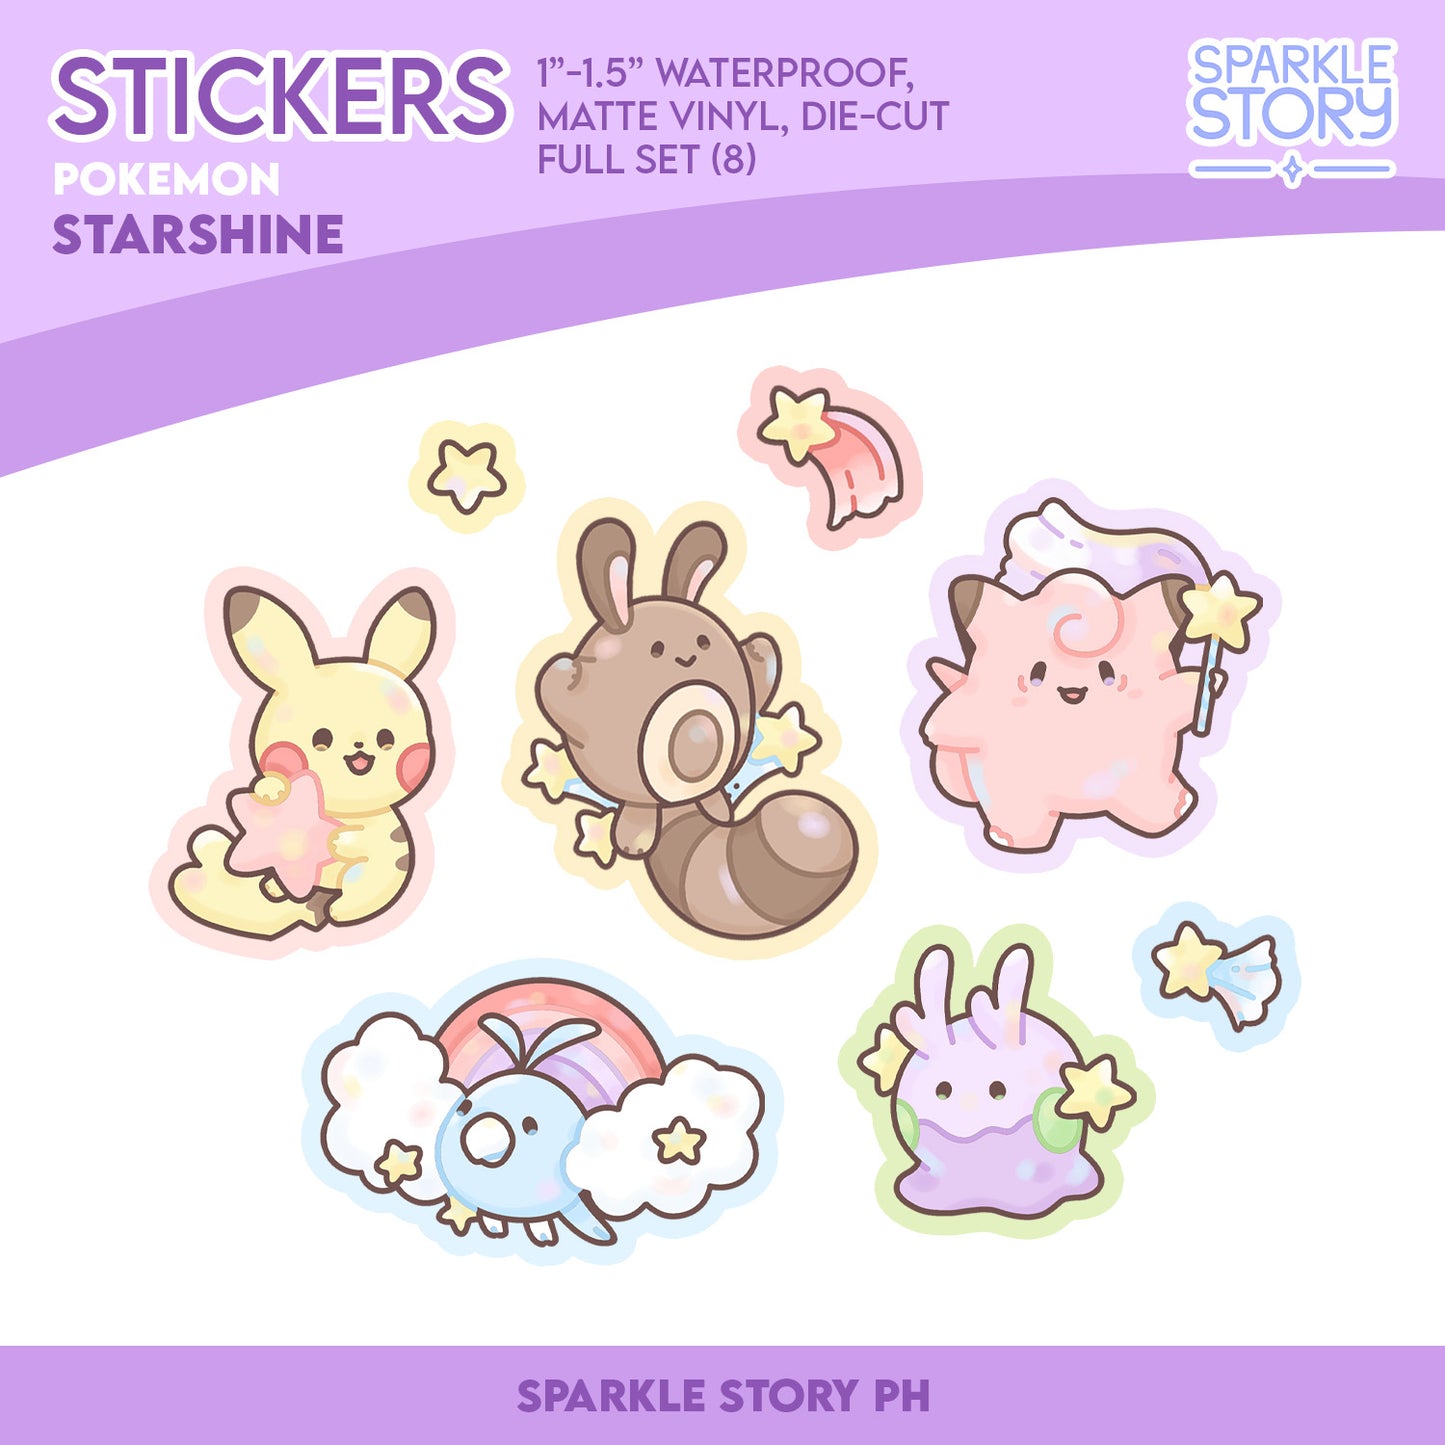 Starshine Poke Sticker Set